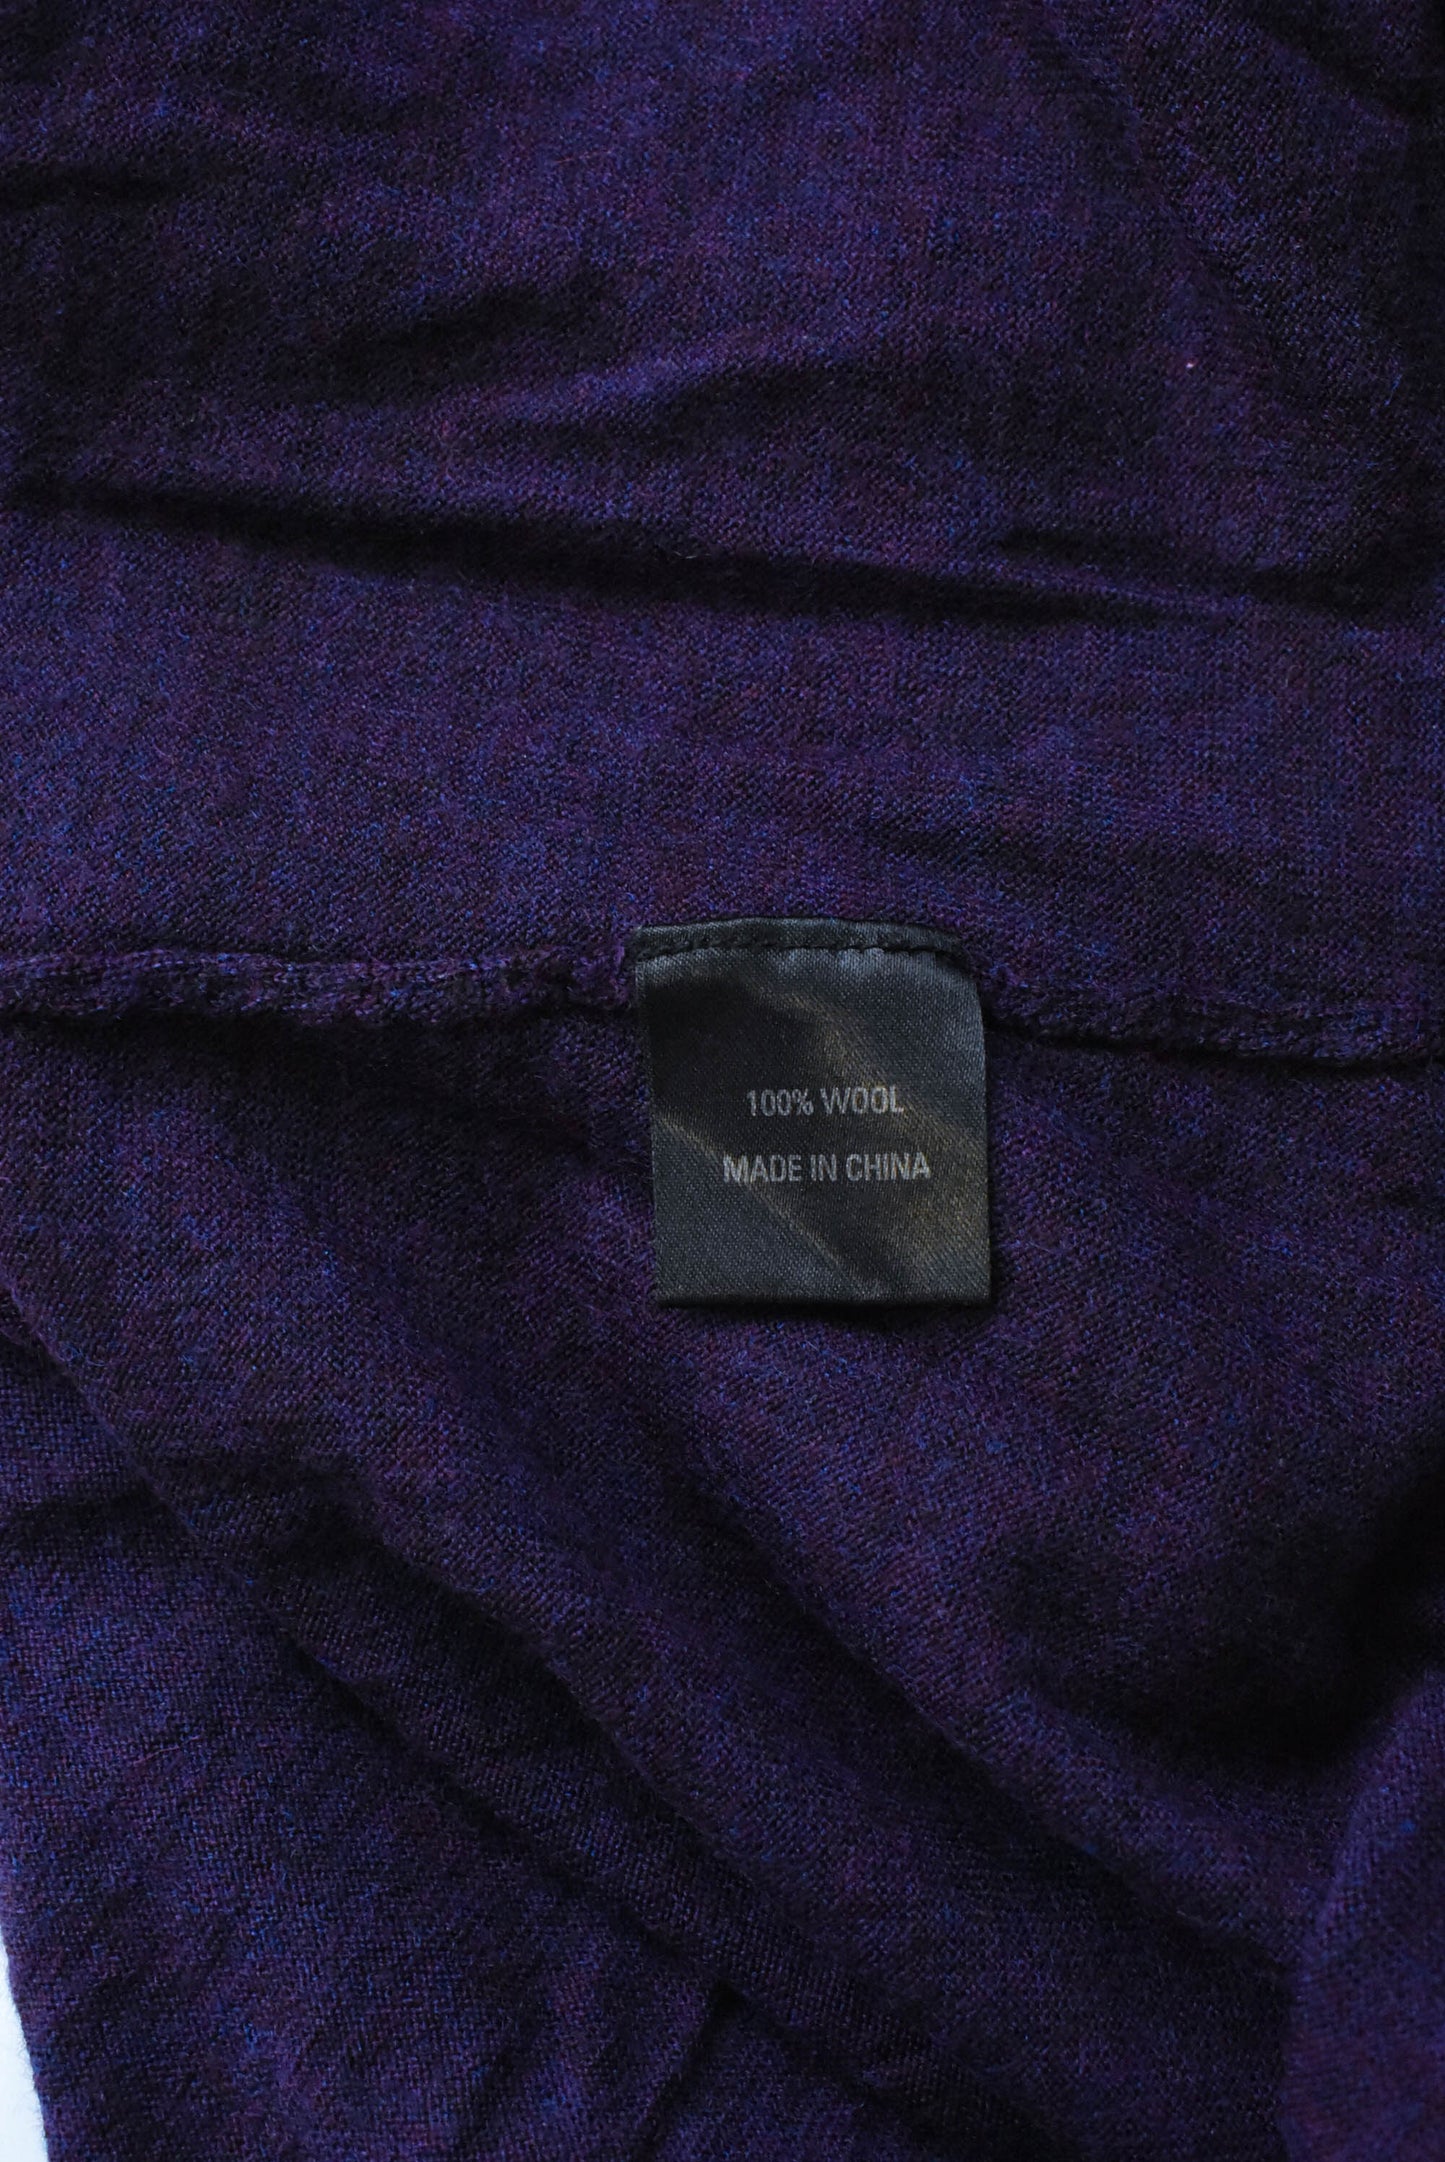 Soeur wool asymmetrical purple dress, size M